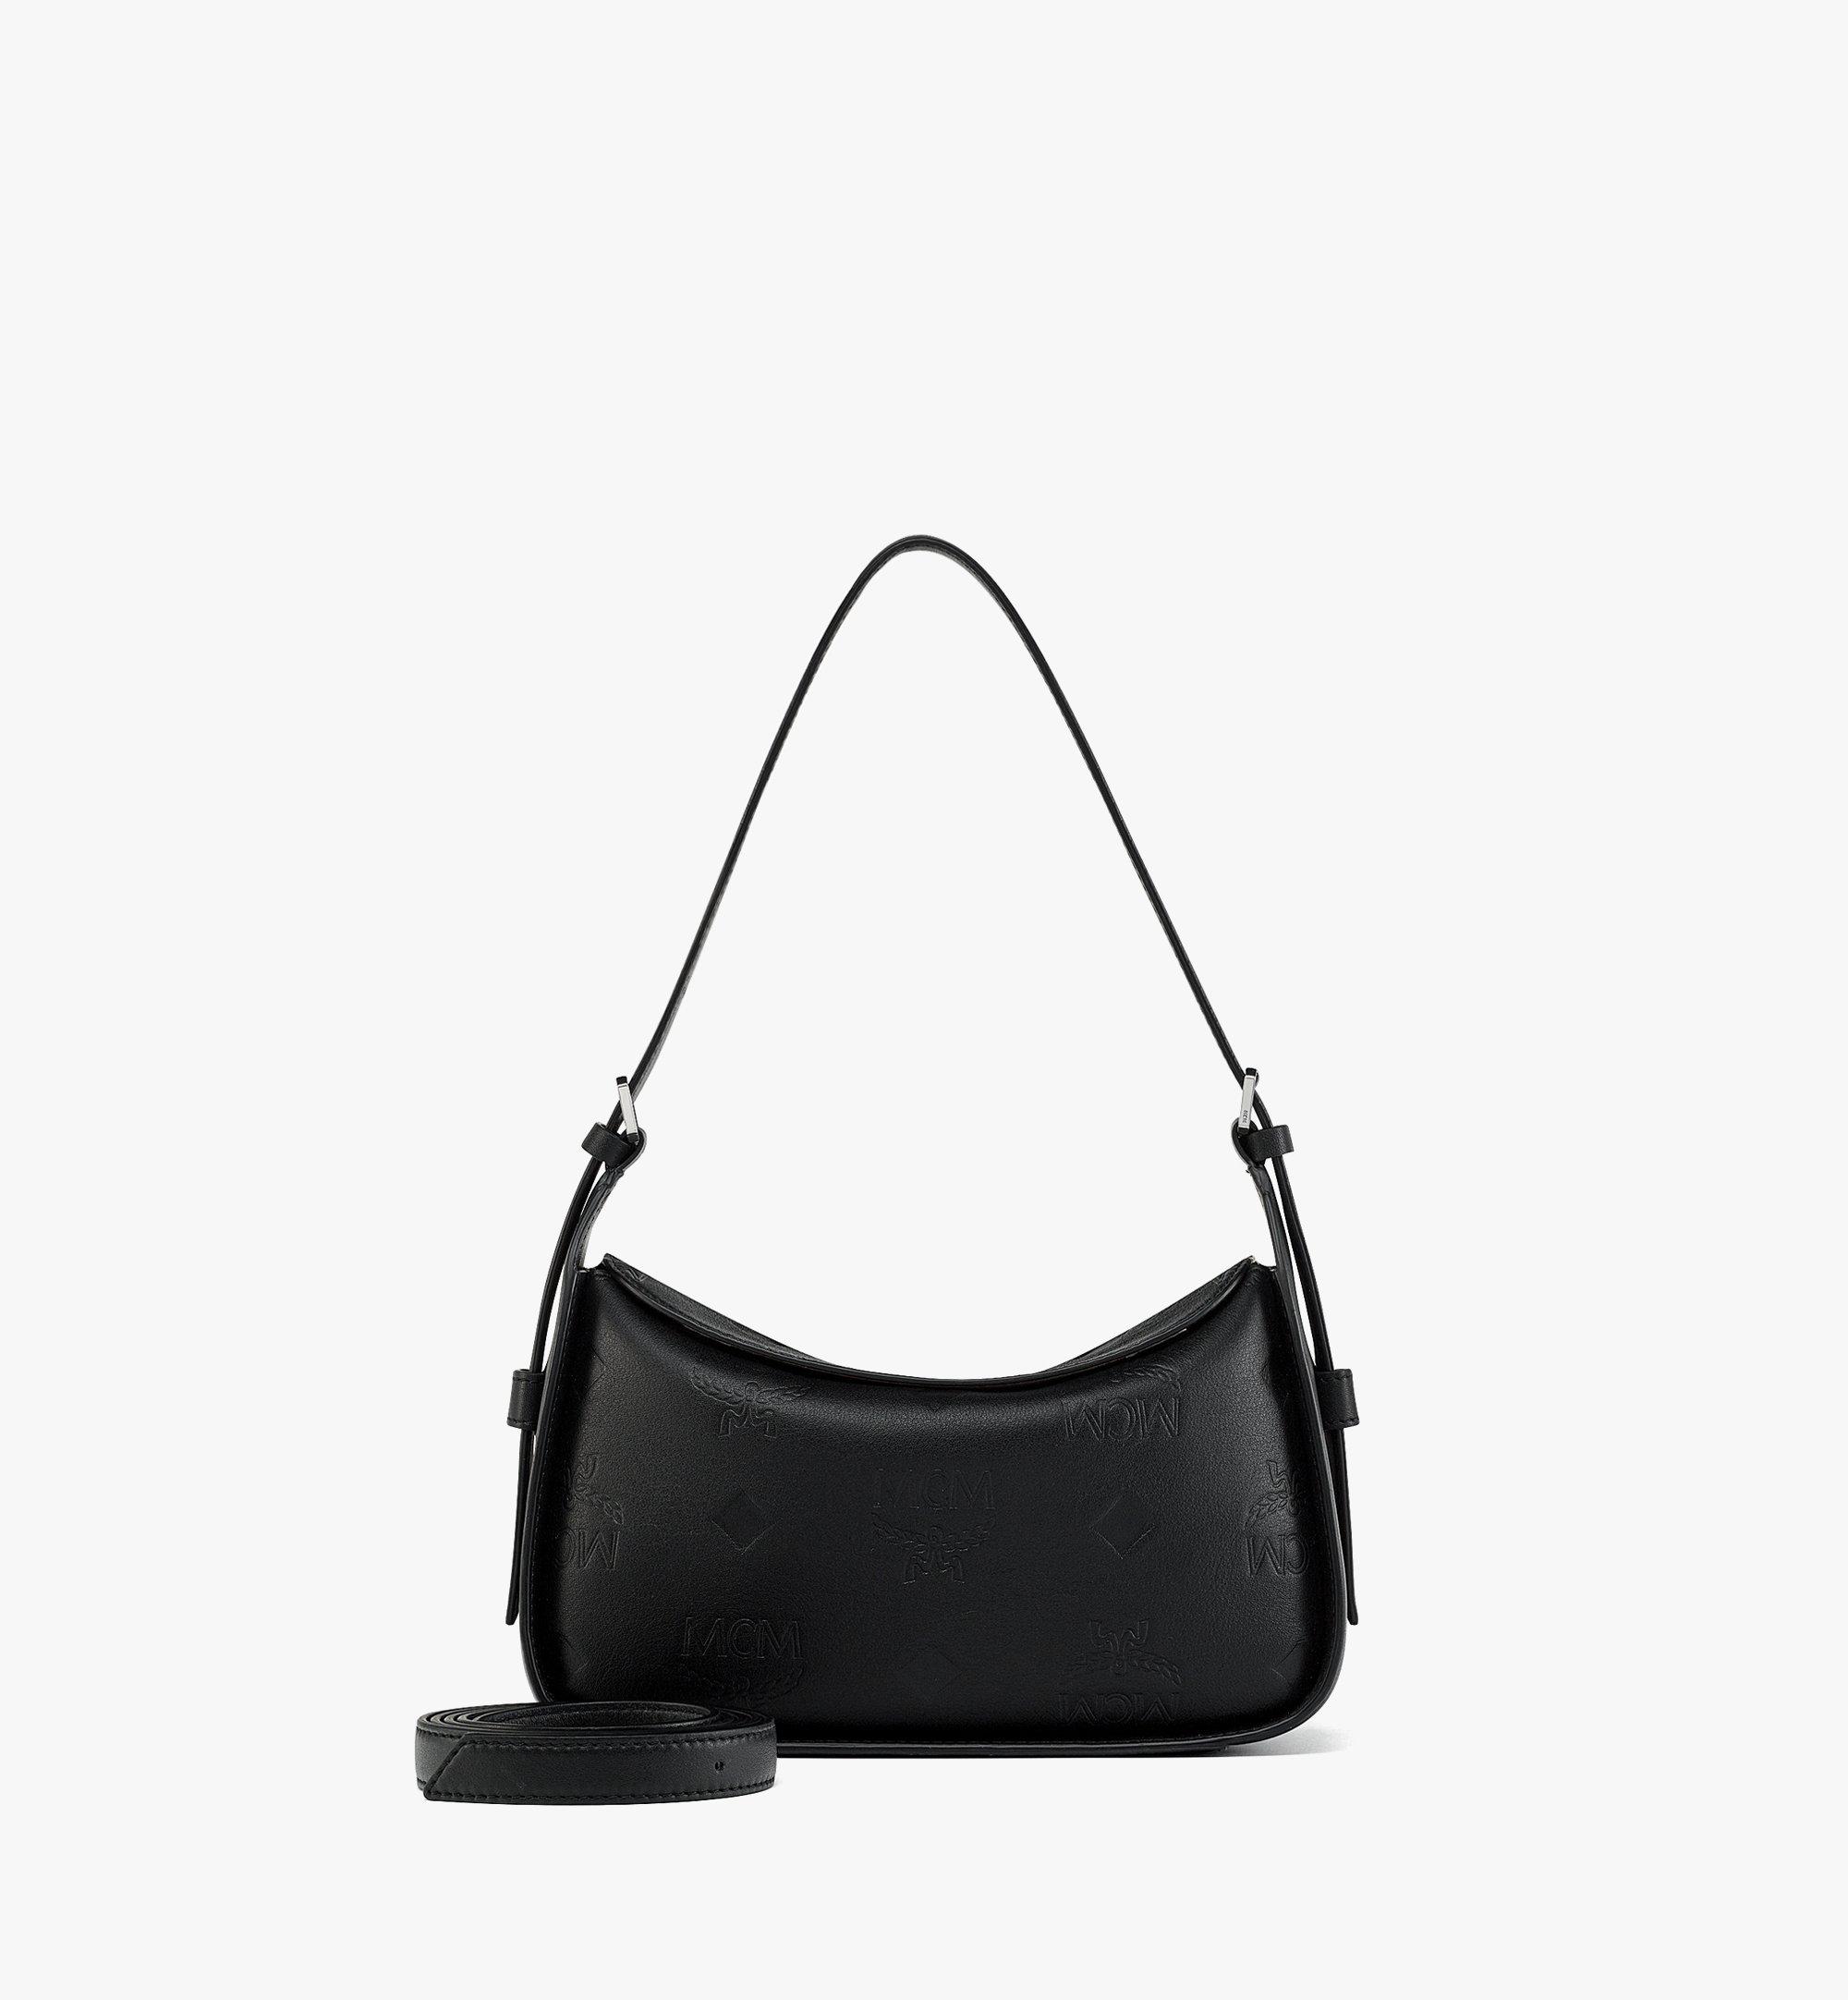 Louis+Vuitton+Mat+Fowler+Shoulder+Bag+Purple+Leather for sale online